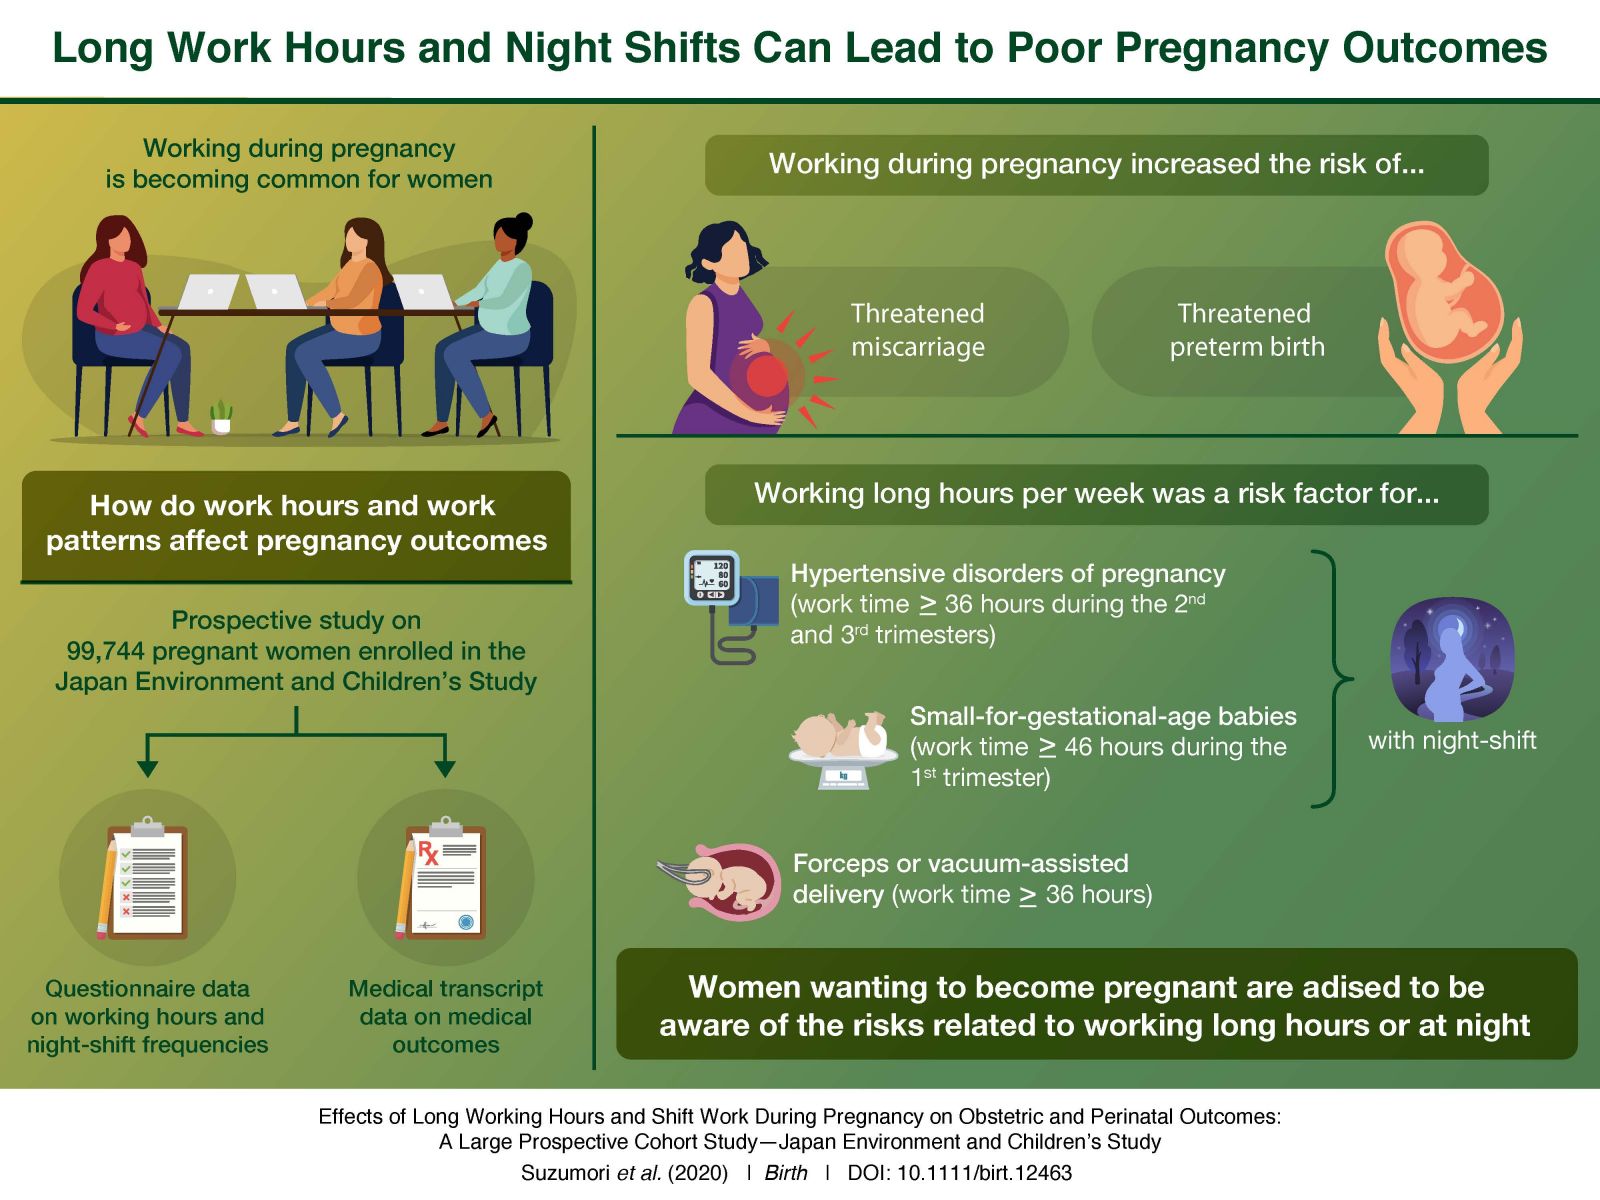 妊娠中の働き方と出産までの母子の健康状態について